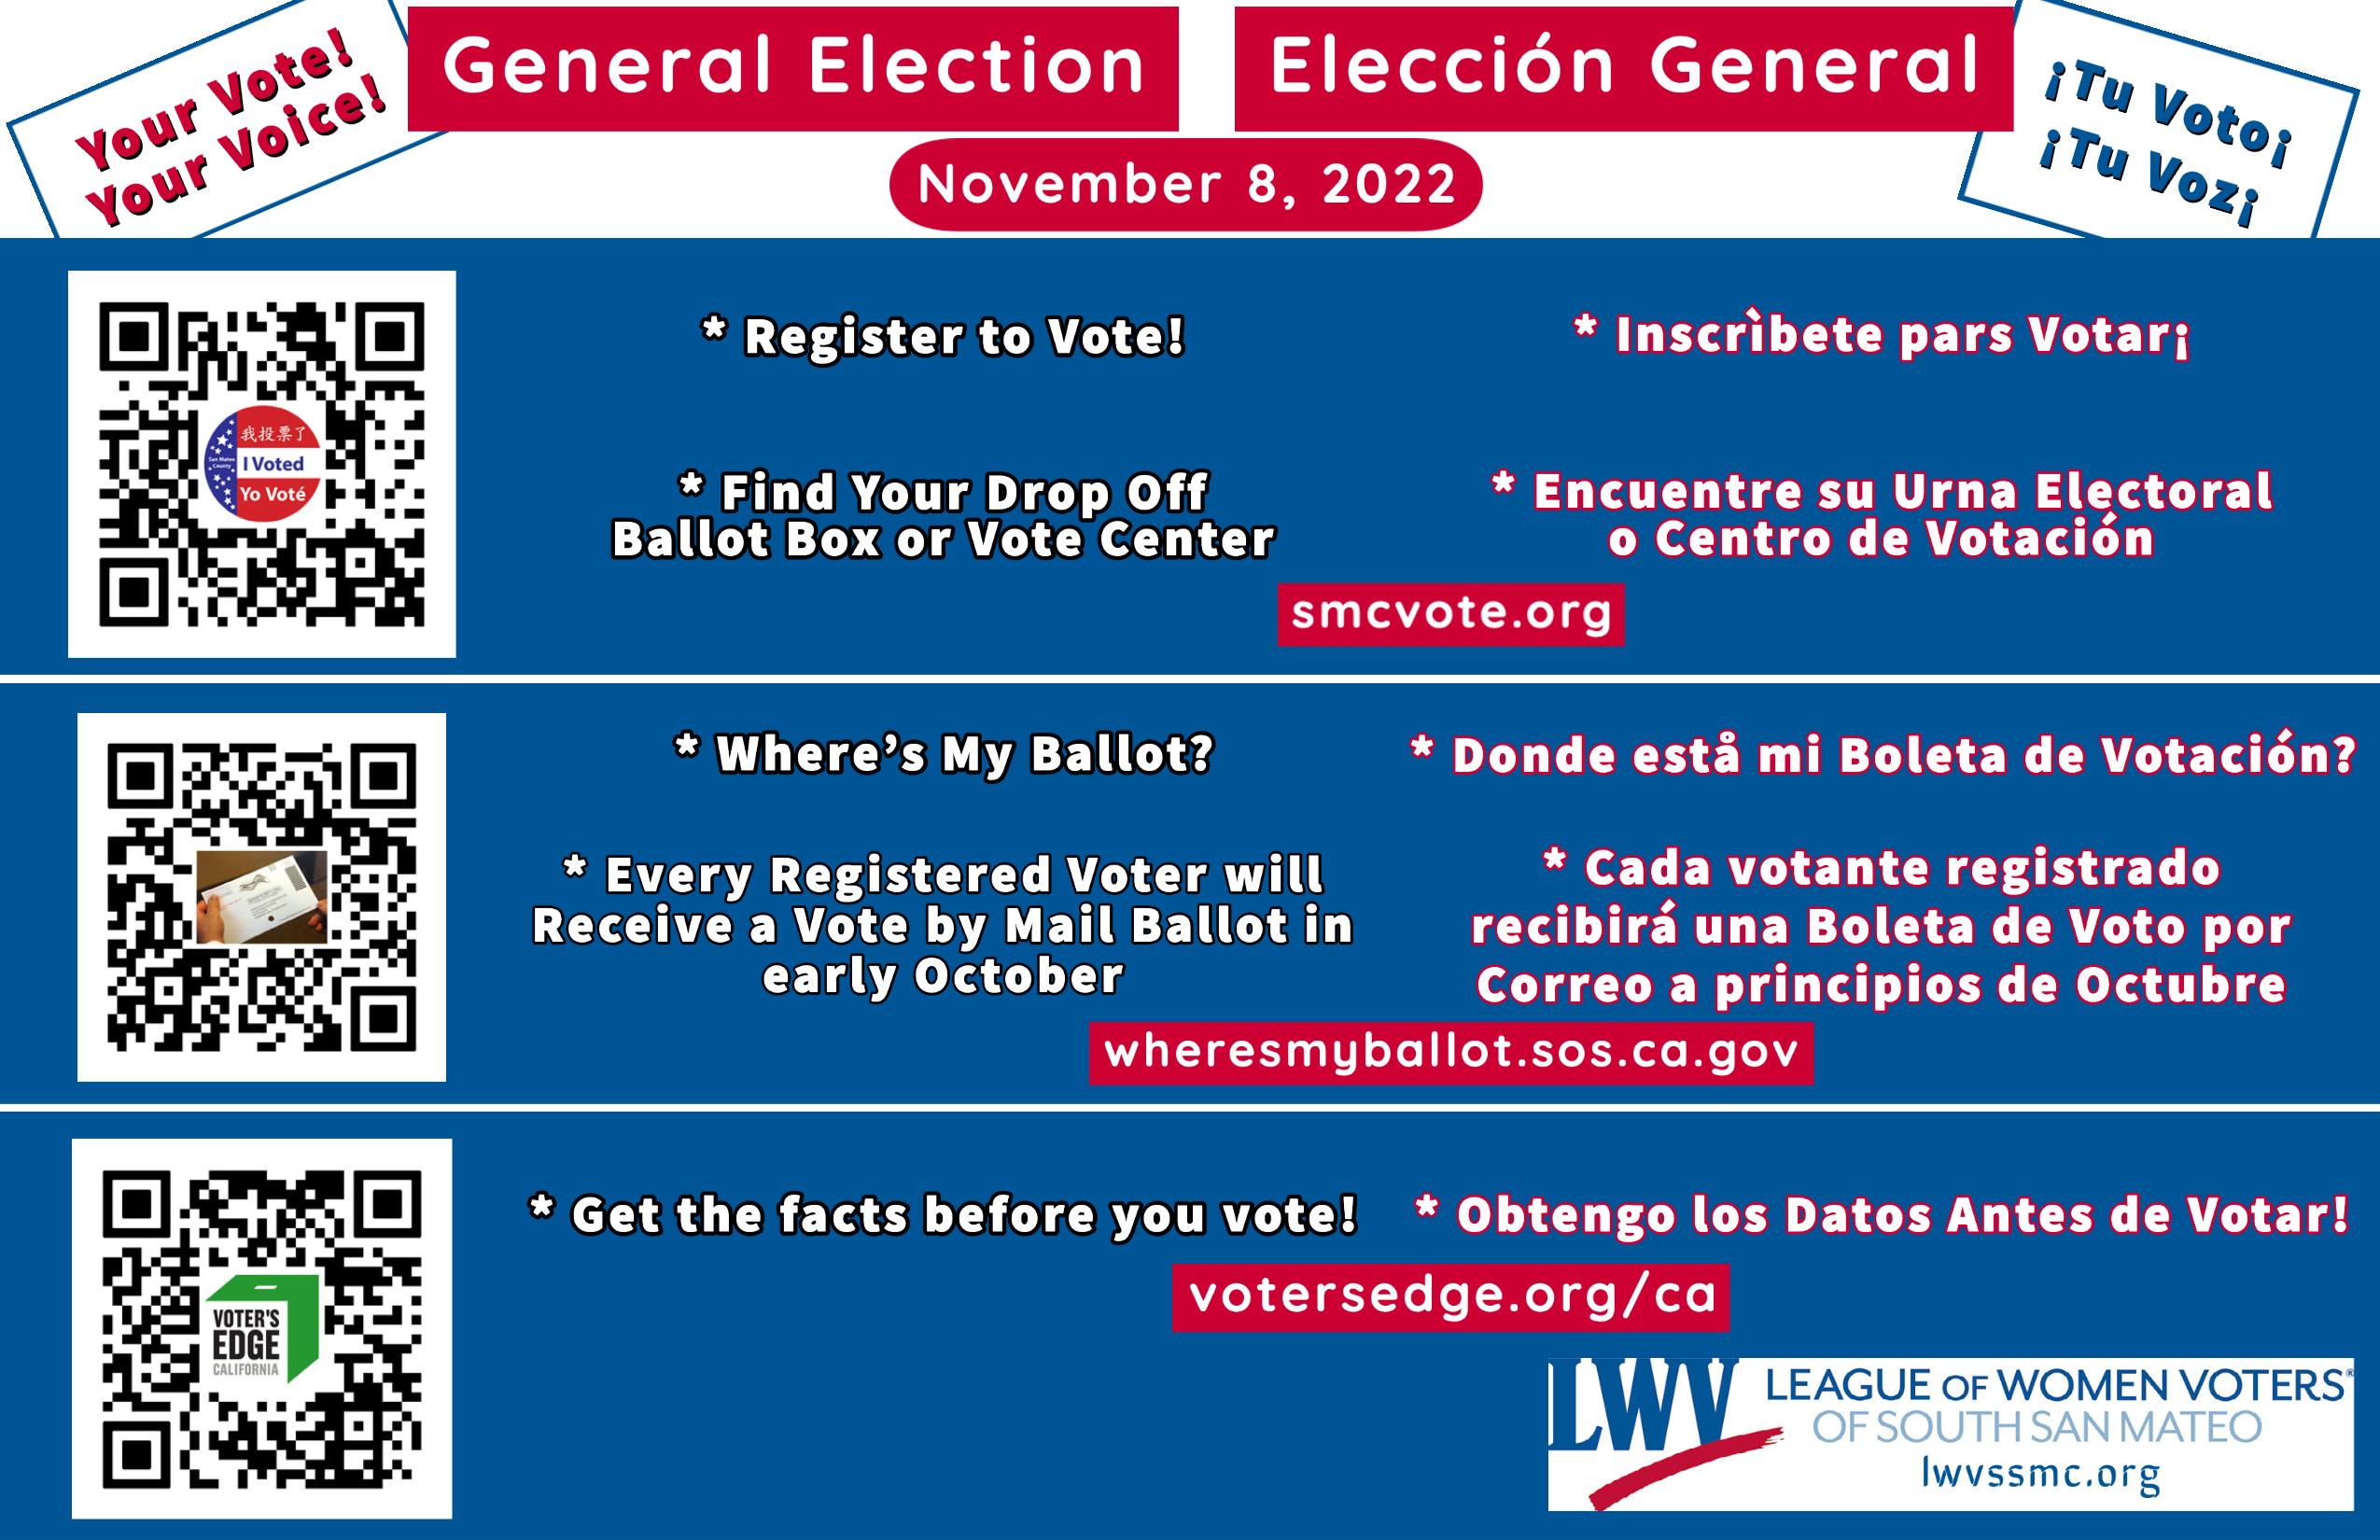 General Election - November 8, 2022